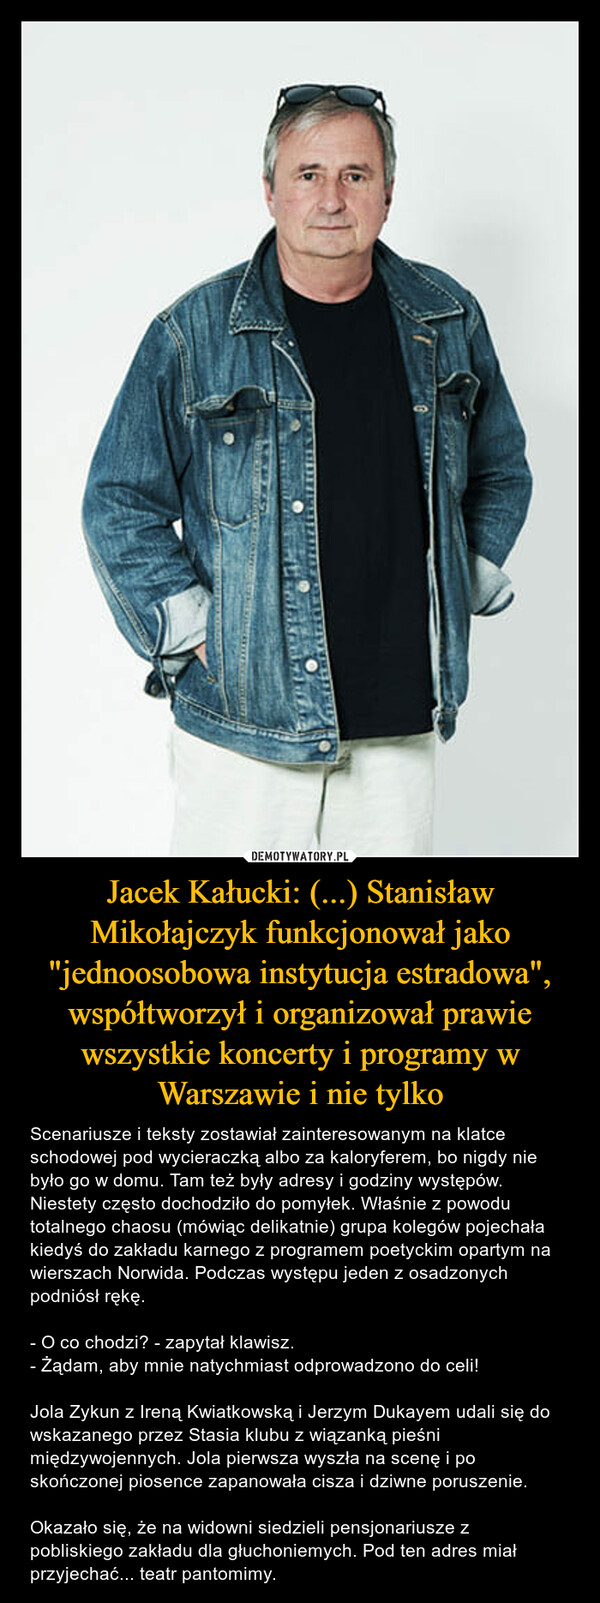 Jacek Kałucki: (...) Stanisław Mikołajczyk funkcjonował jako "jednoosobowa instytucja estradowa", współtworzył i organizował prawie wszystkie koncerty i programy w Warszawie i nie tylko